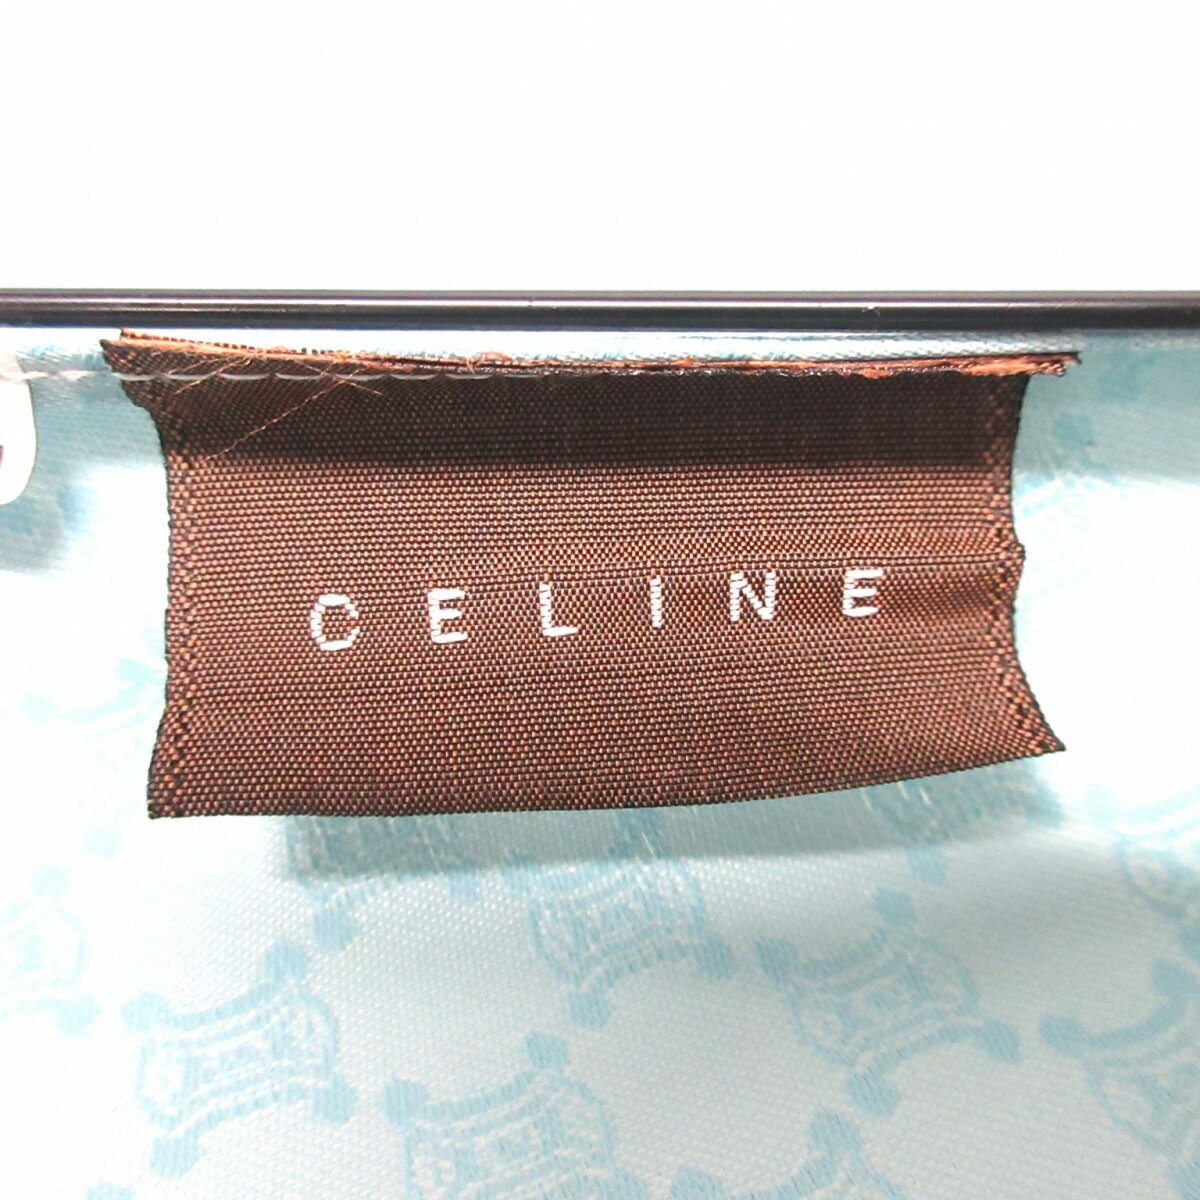 【新着】【中古】CELINE(セリーヌ) 折りたたみ傘 マカダム柄 ライトブルー×ライトグレー 化学繊維